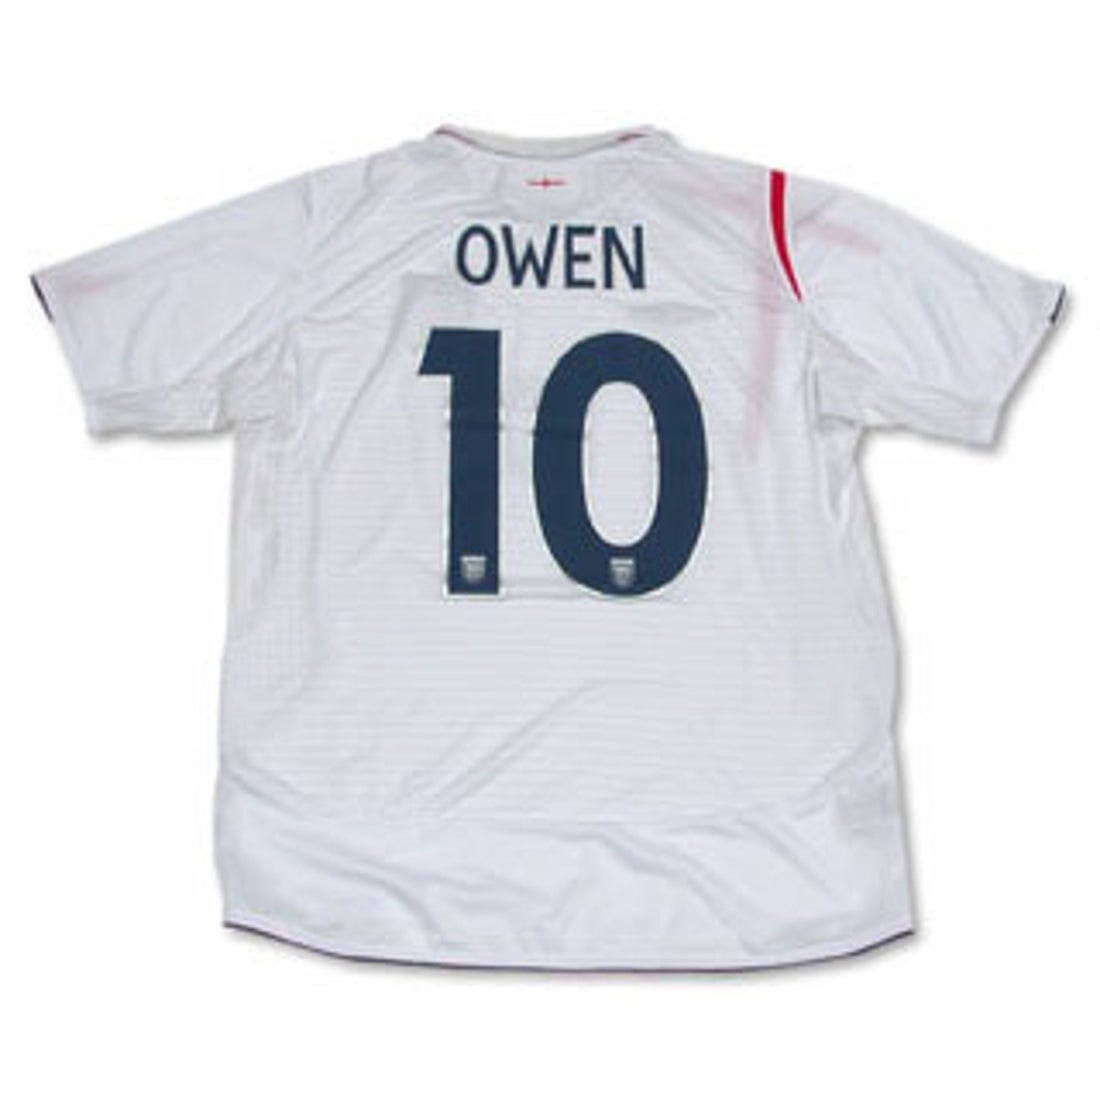 イングランド代表 オーウェン サッカー ユニフォーム アンブロ - ウェア